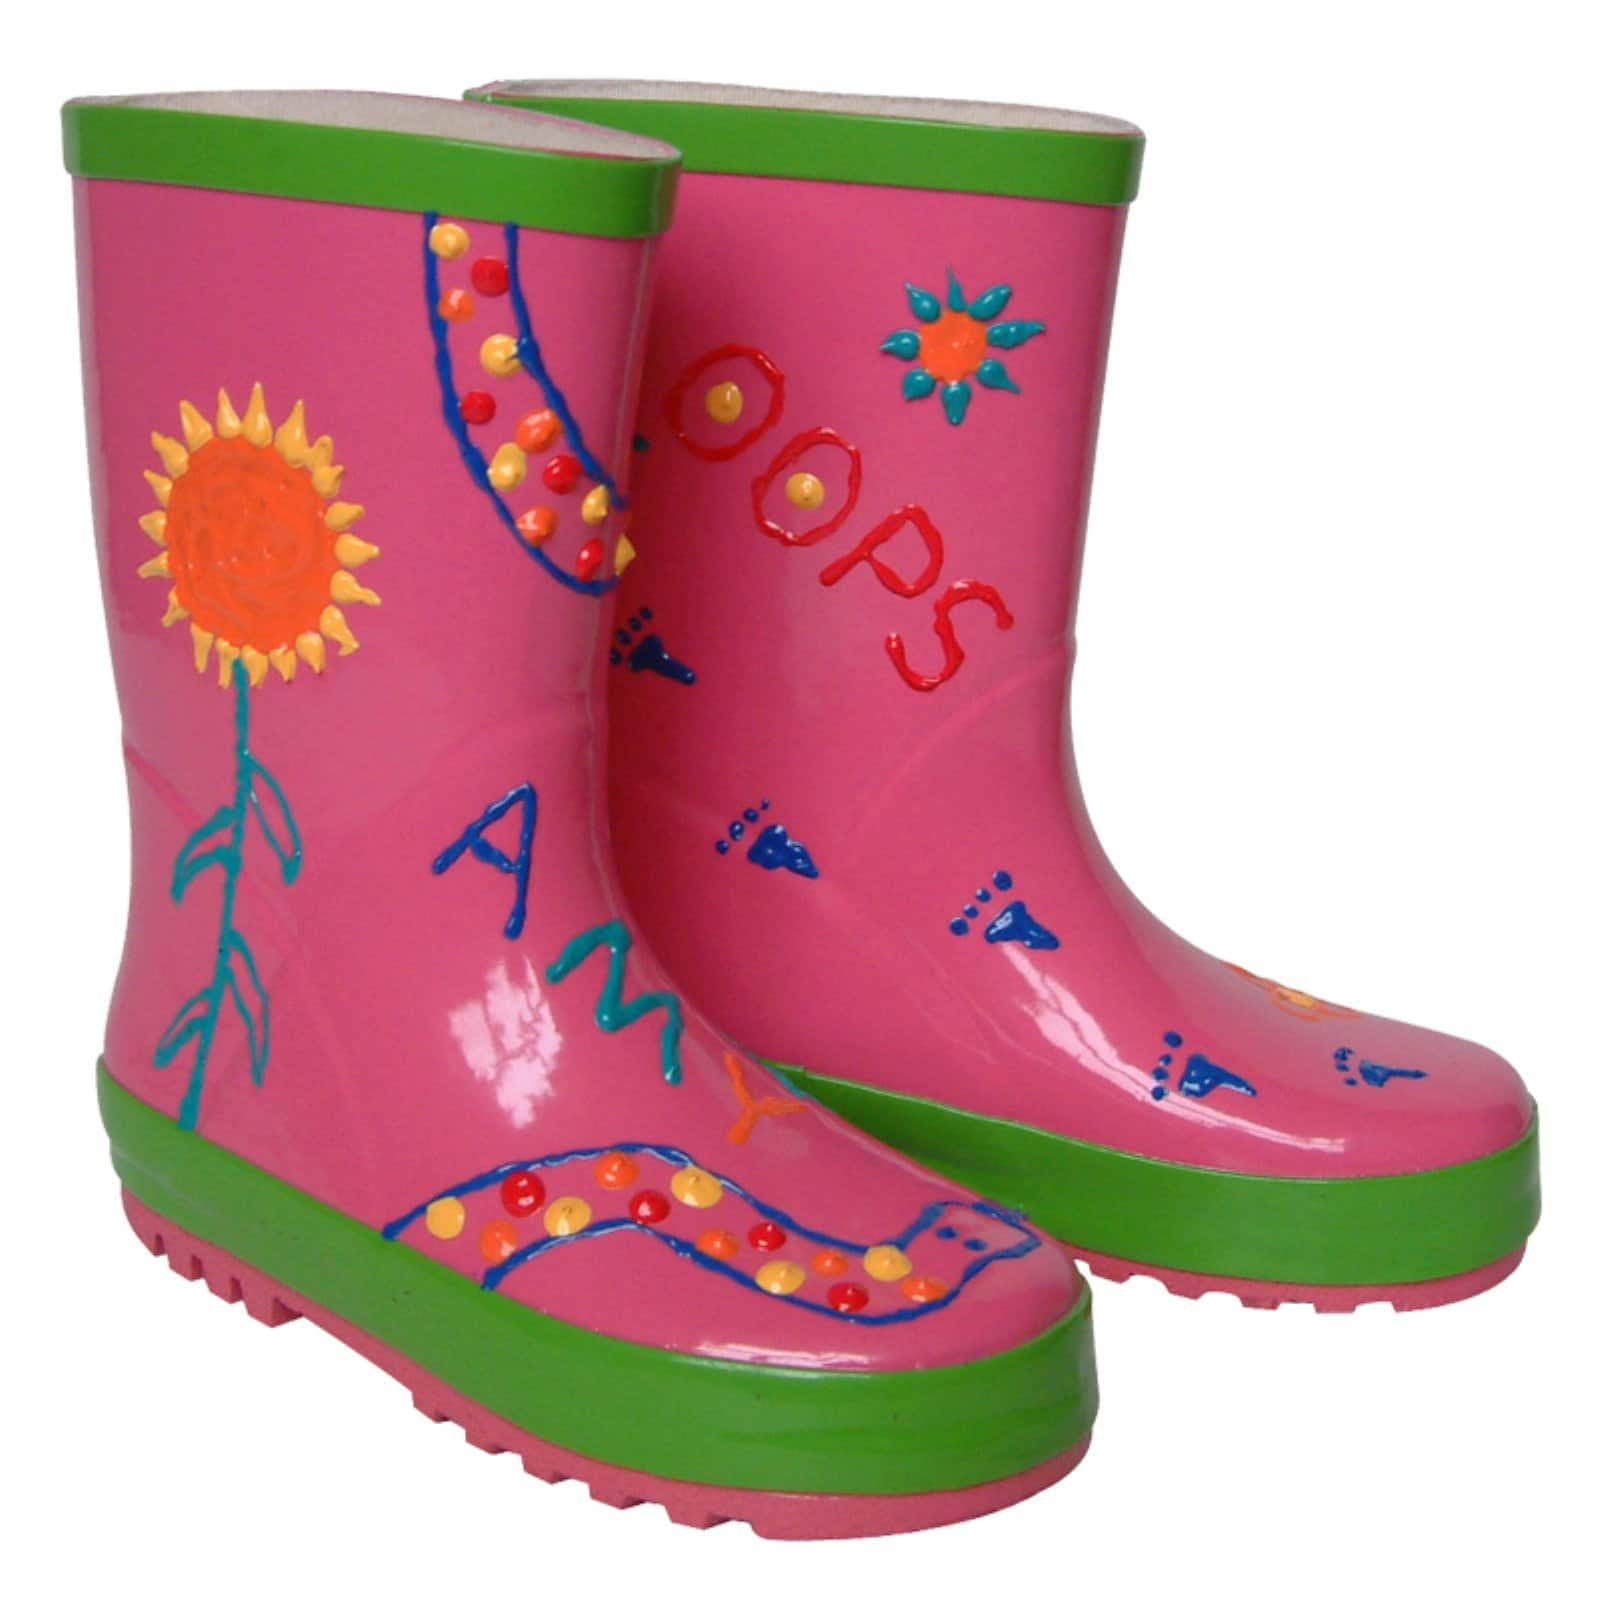 Wellington Boots kids wellies Waterproof Lightweight Drawstring Cuff Children Rain Boots Size 1.5-8.5